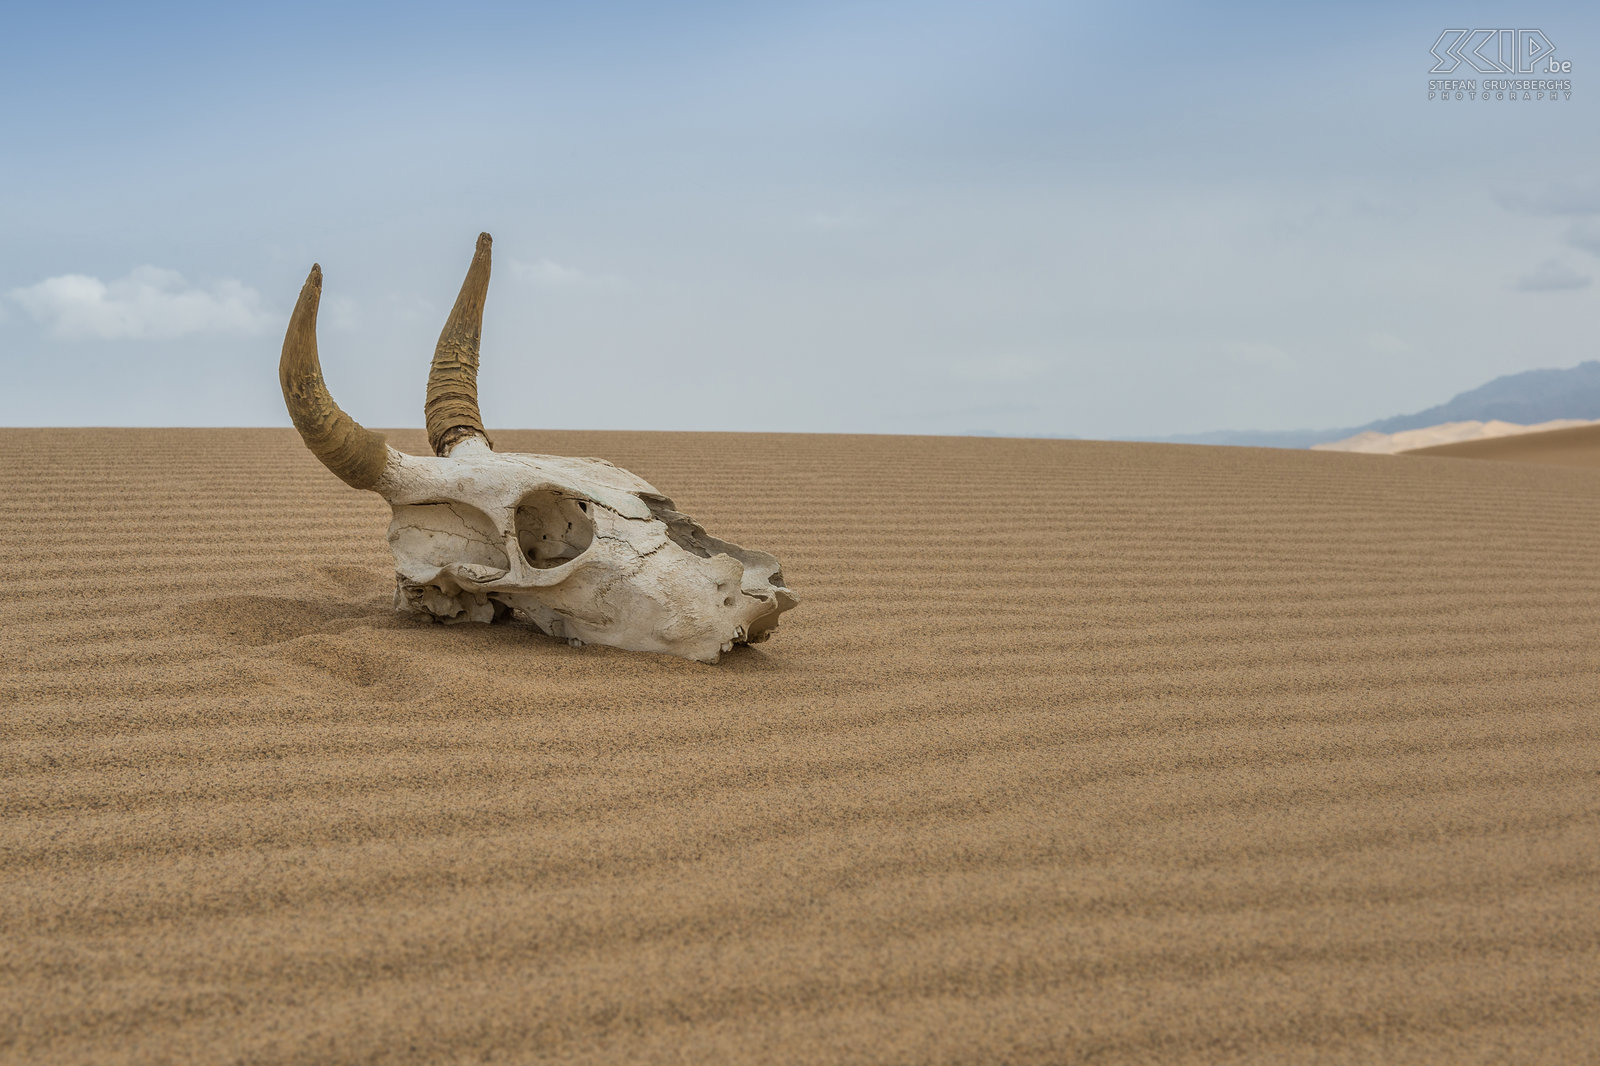 Gobi - Khongoryn Els - Schedel Khongoryn Els ook wel bekend als de ‘Singing dunes’ zijn de bekendste zandduinen van de Gobi woestijn waar slechts weinig planten en dieren kunnen overleven. Temperaturen kunnen +40° C bereiken in de zomer en -40° C in de winter. Stefan Cruysberghs